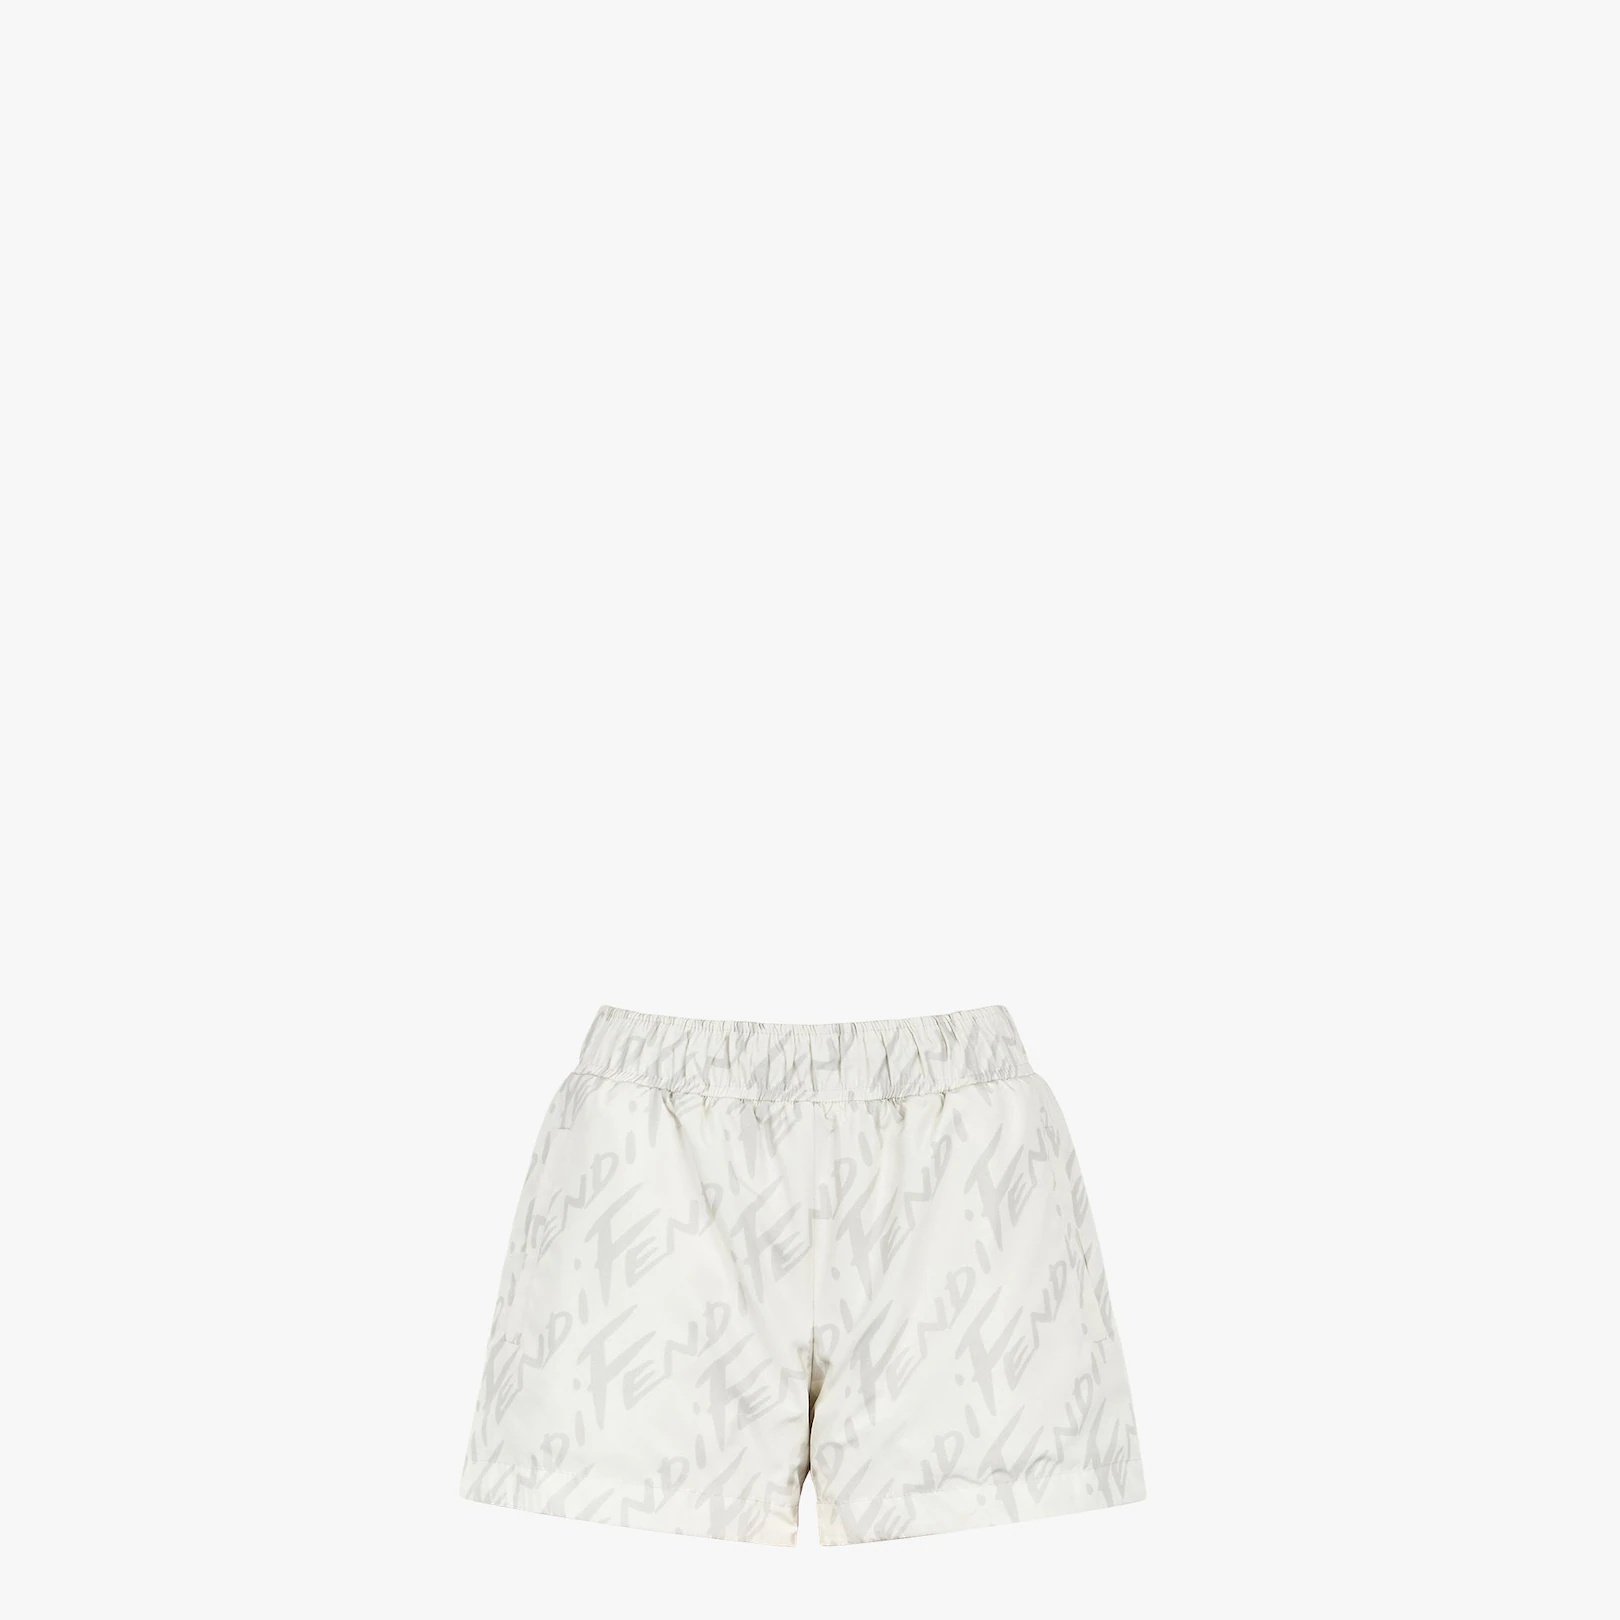 White nylon shorts - 4